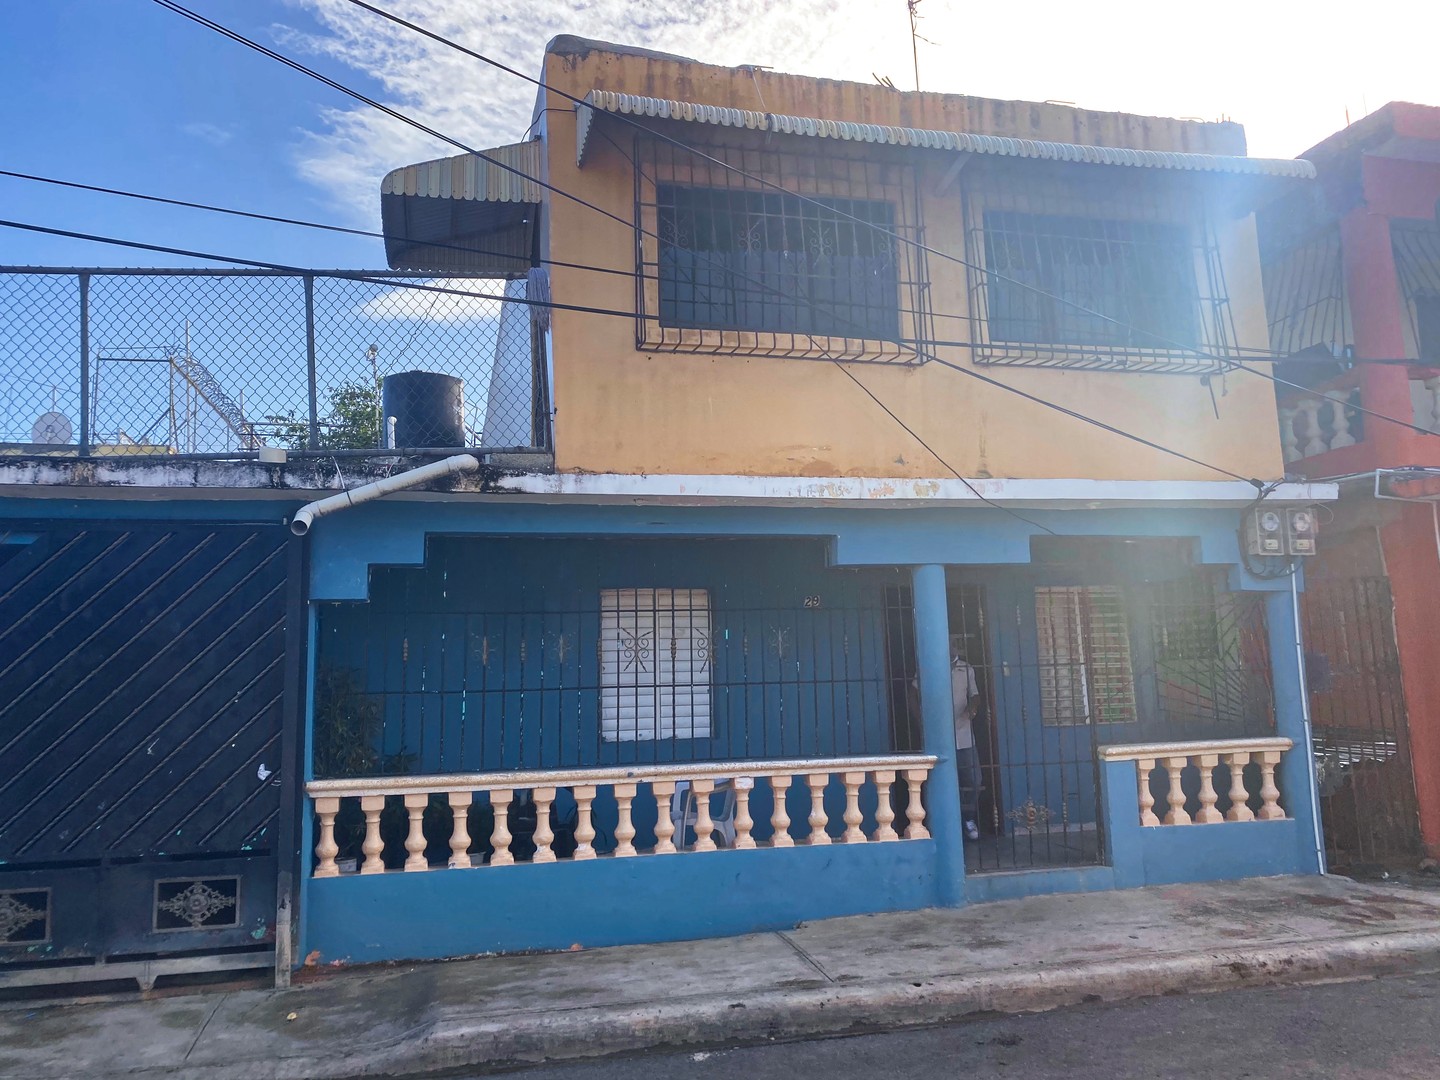 casas - Casa 3-en-1 Inversion Para Alquiler, Almirante Santo Domingo Este